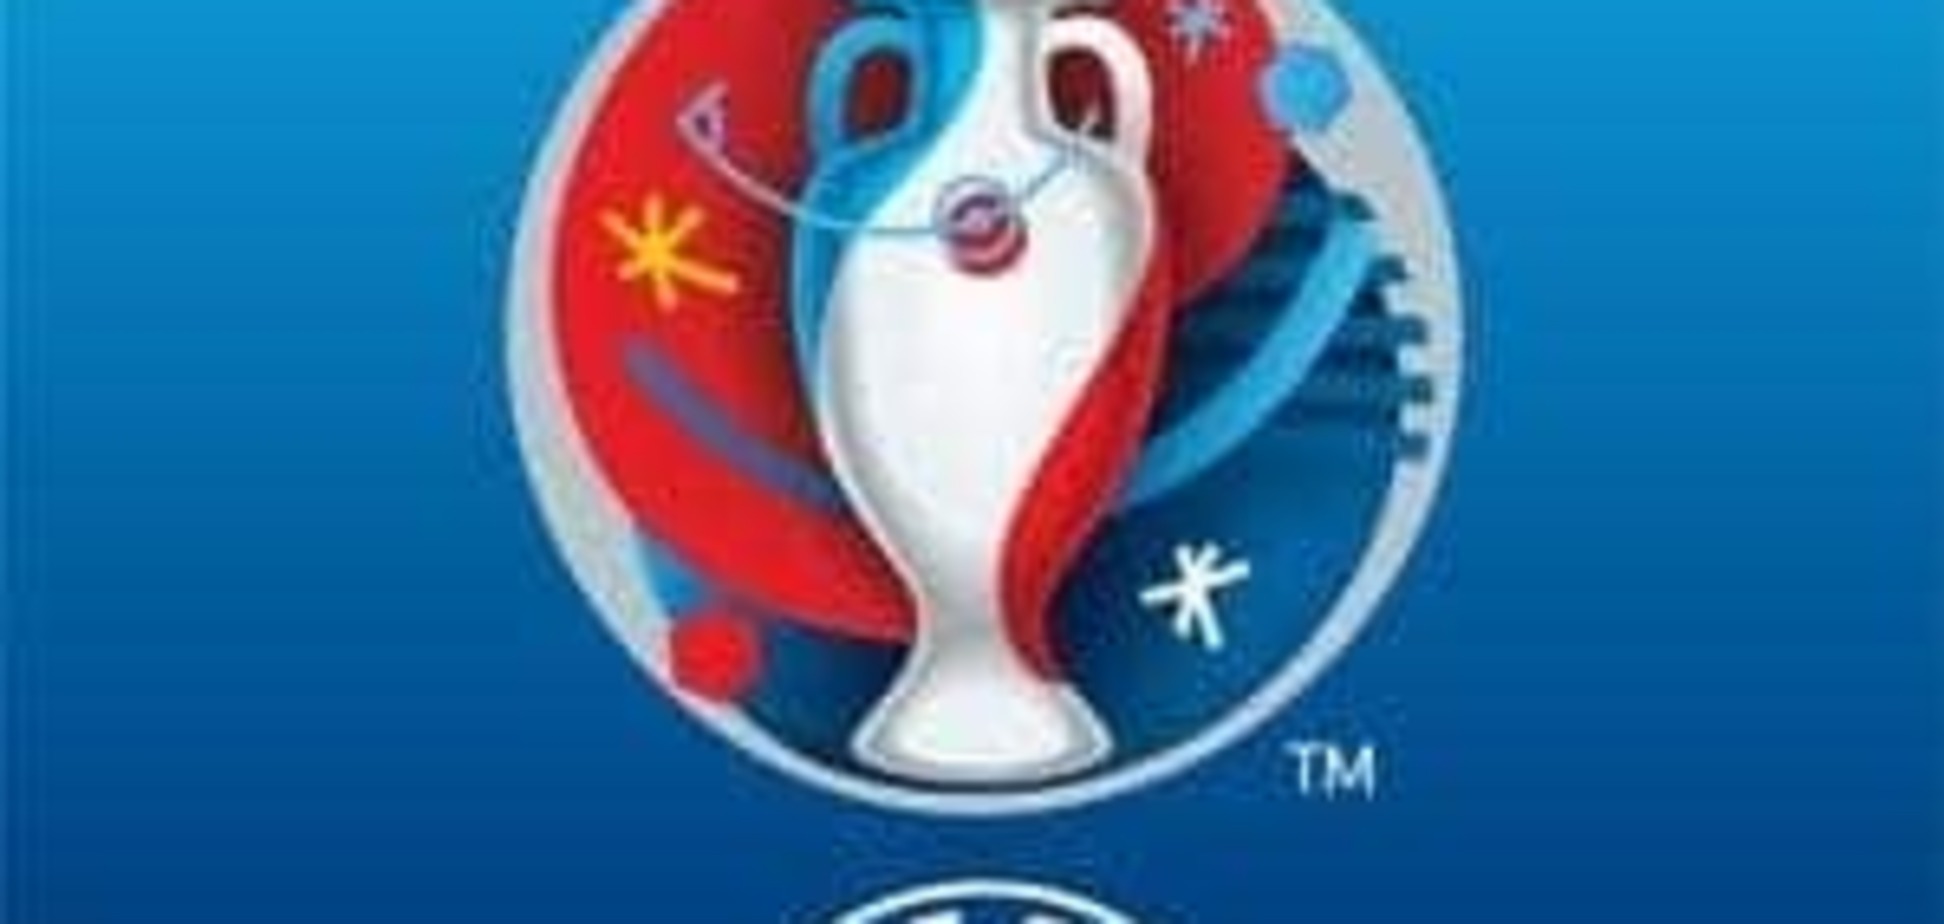 Евро-2016: 'Все сработало': УЕФА в восторге от нового формата турнира